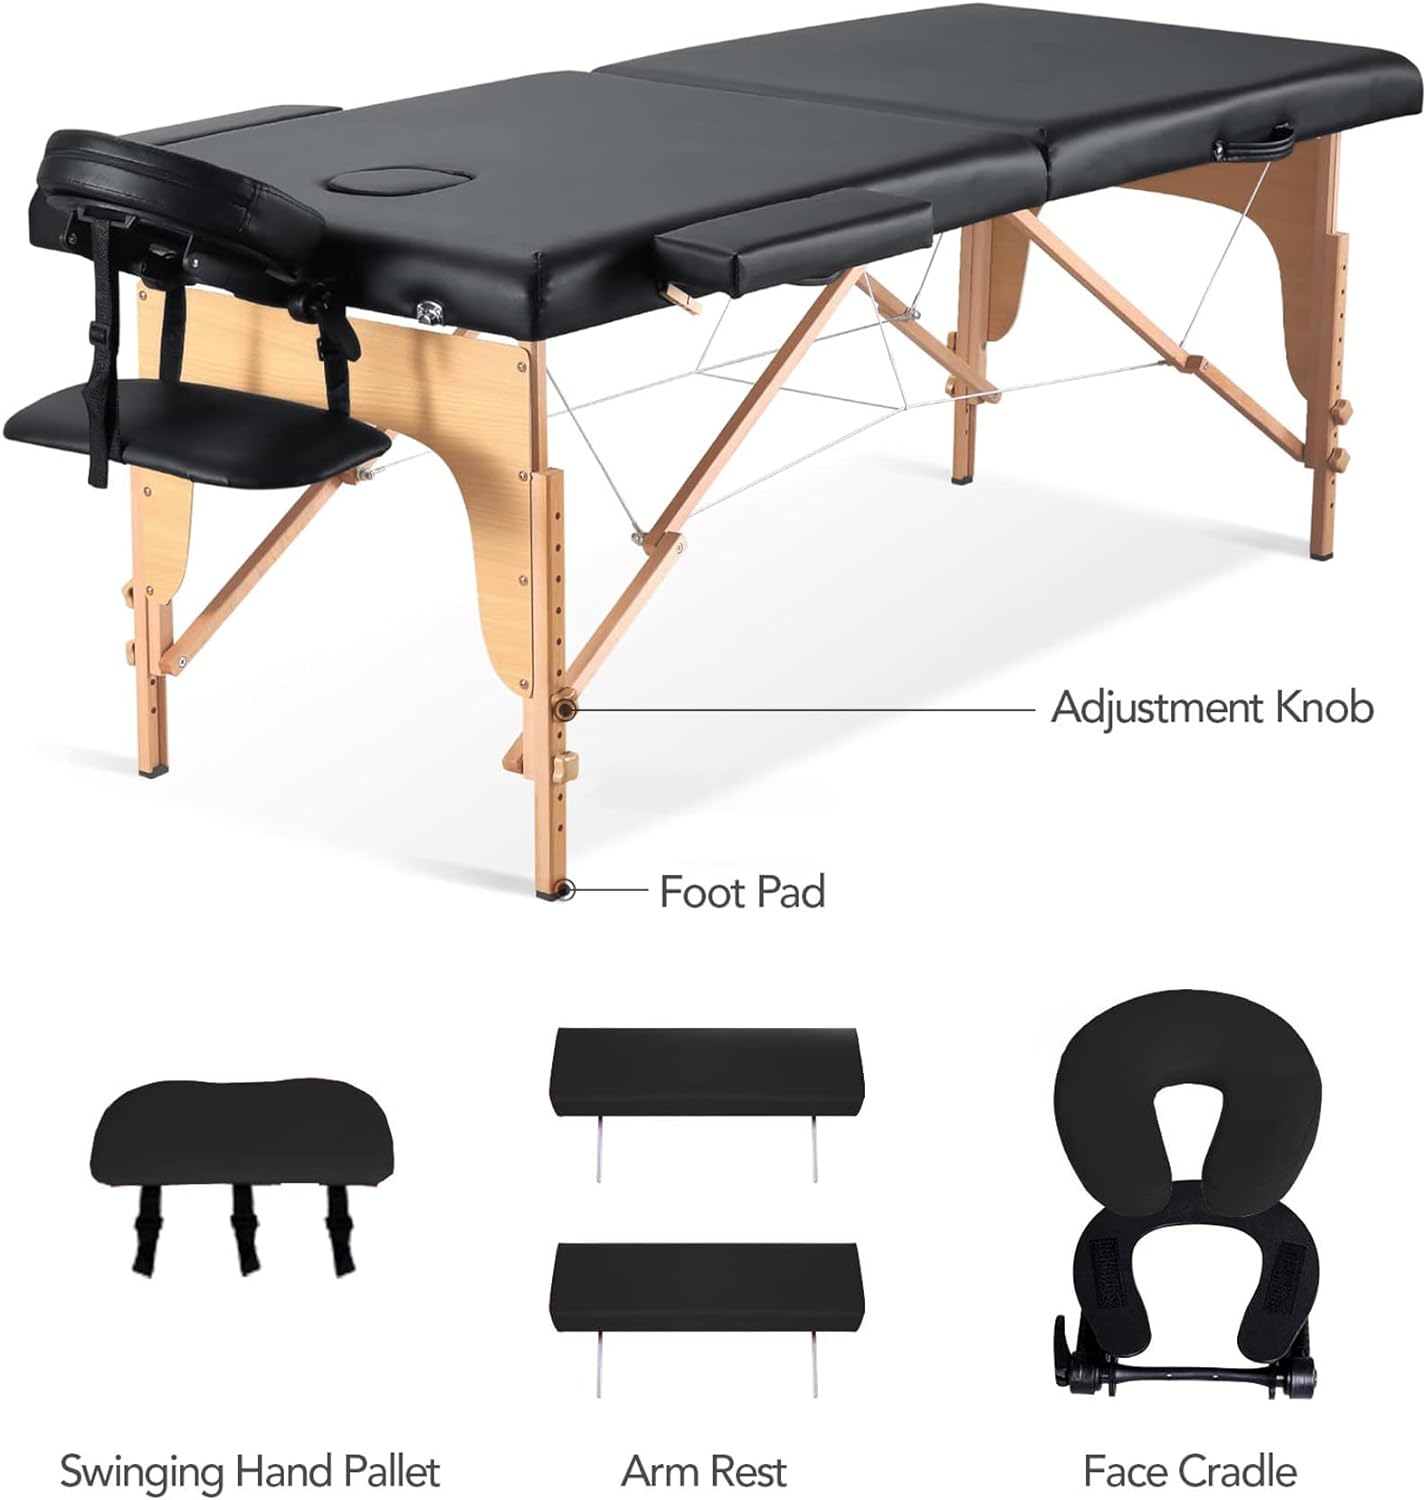 CHRUN Mesa de masaje portátil, cama de masaje profesional, 35 ajustes de